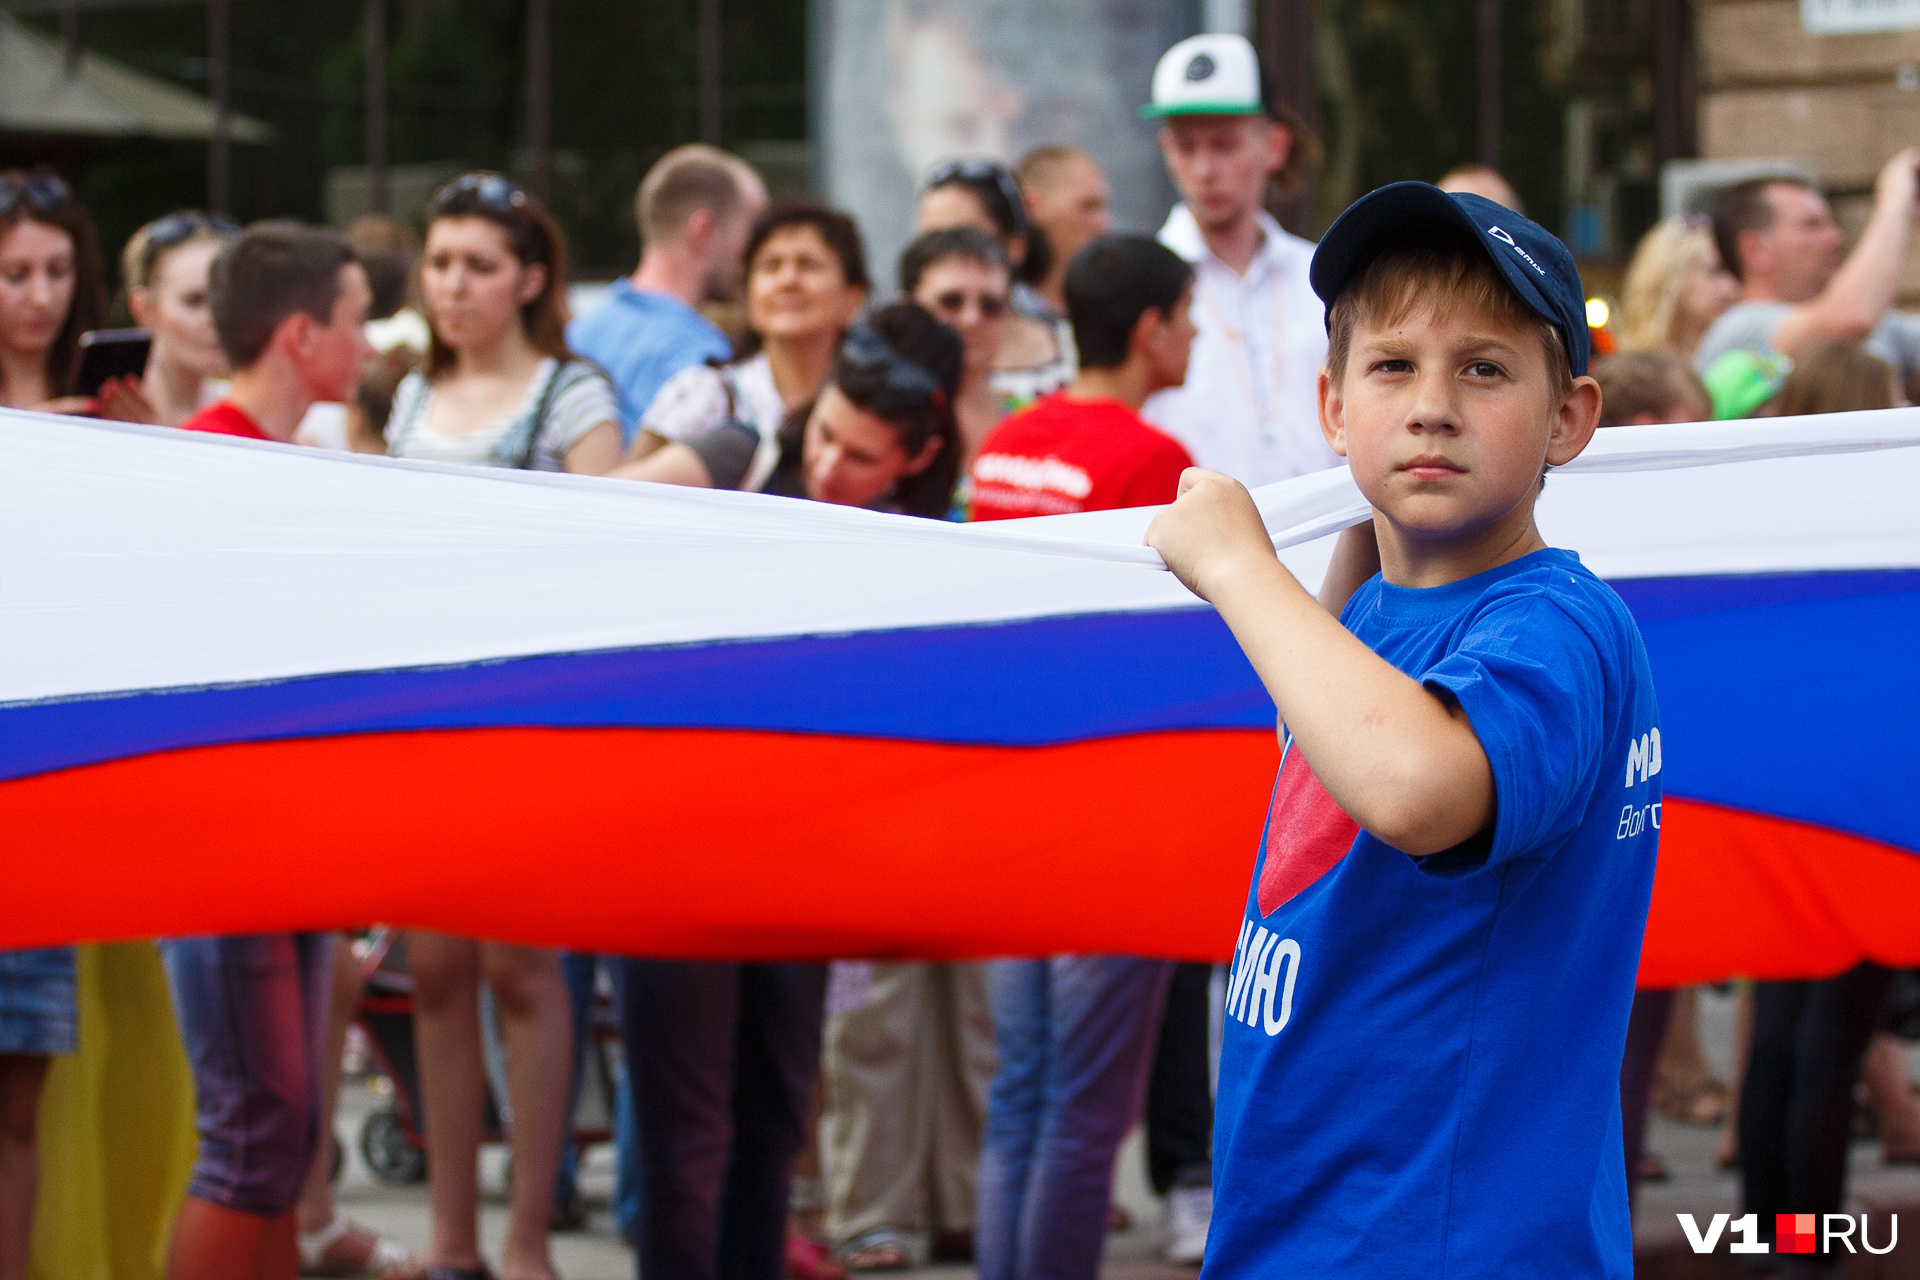 российский флаг фото для детей